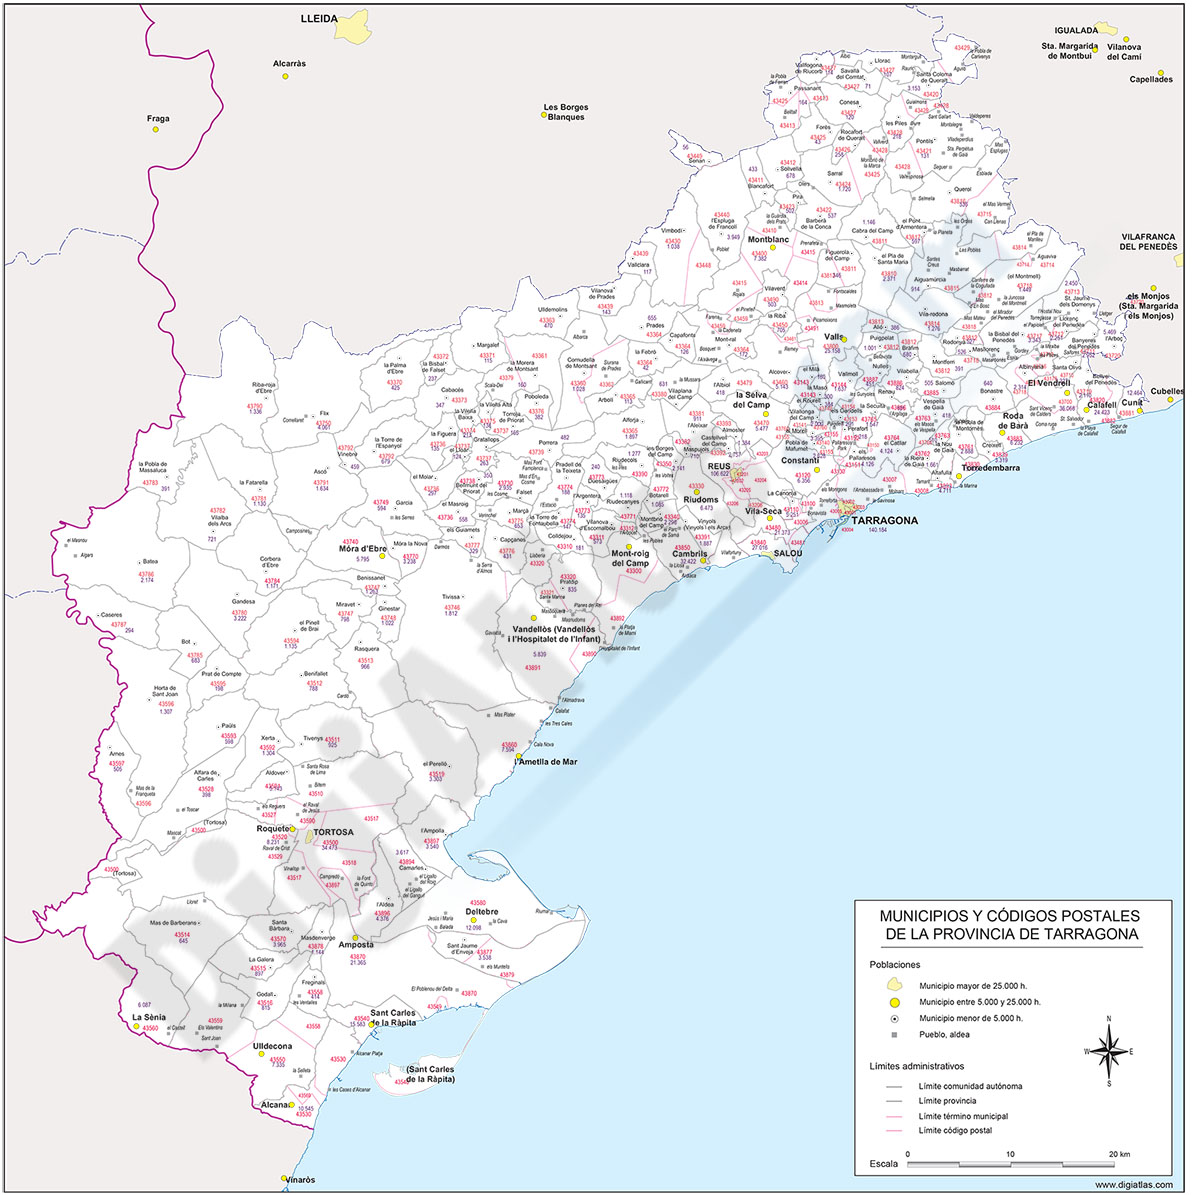 Tarragona - mapa provincial con municipios, códigos postales y habitantes